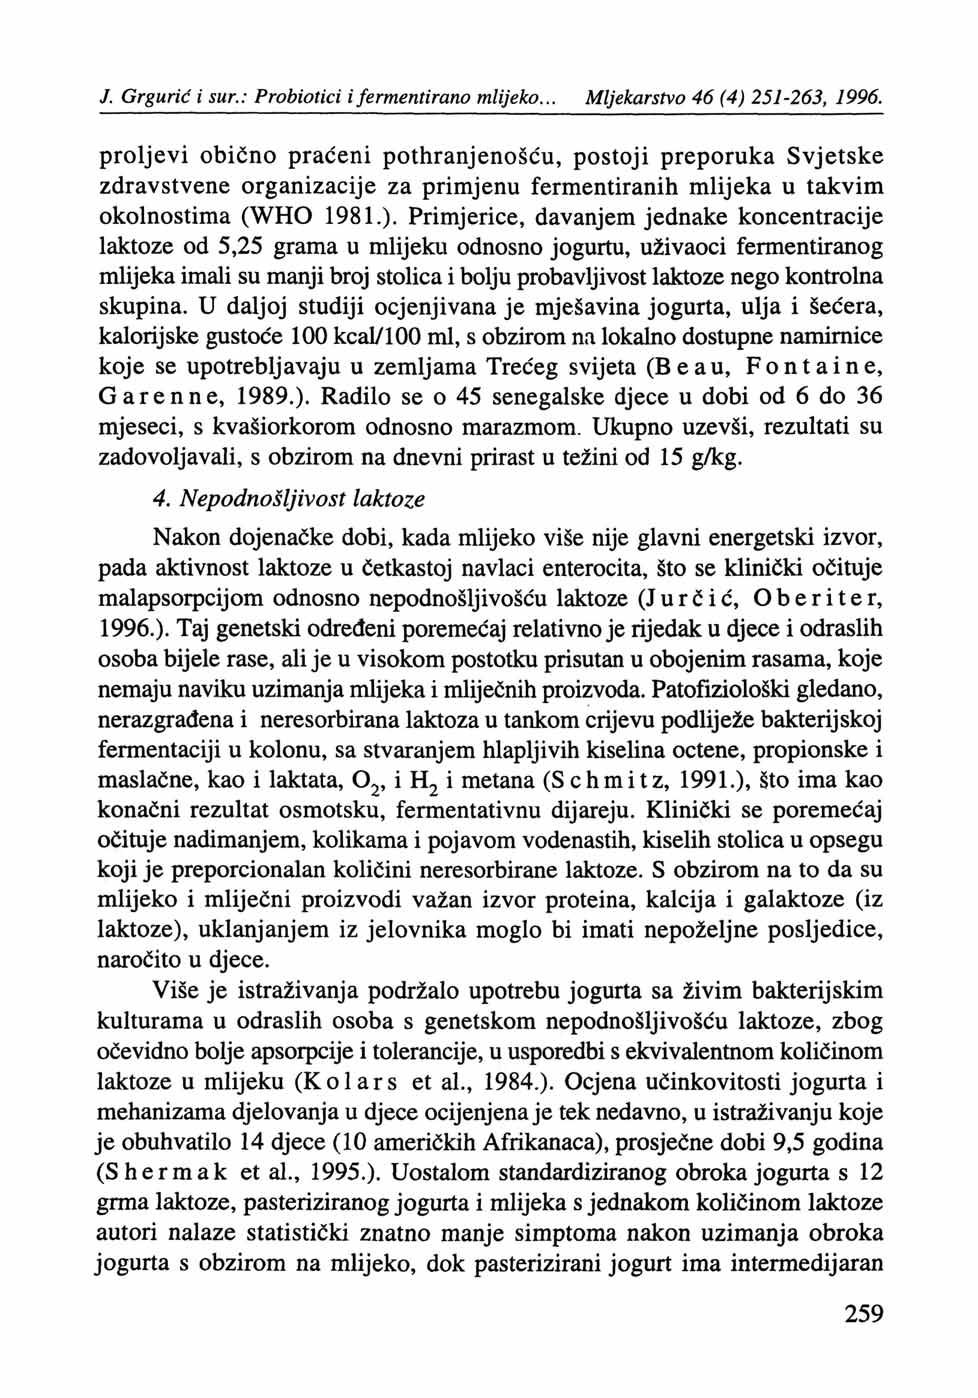 J. Grgurić i sur.: Probiotici i fermentirano mlijeko... Mljekarstvo 46 (4) 251-263, 1996.